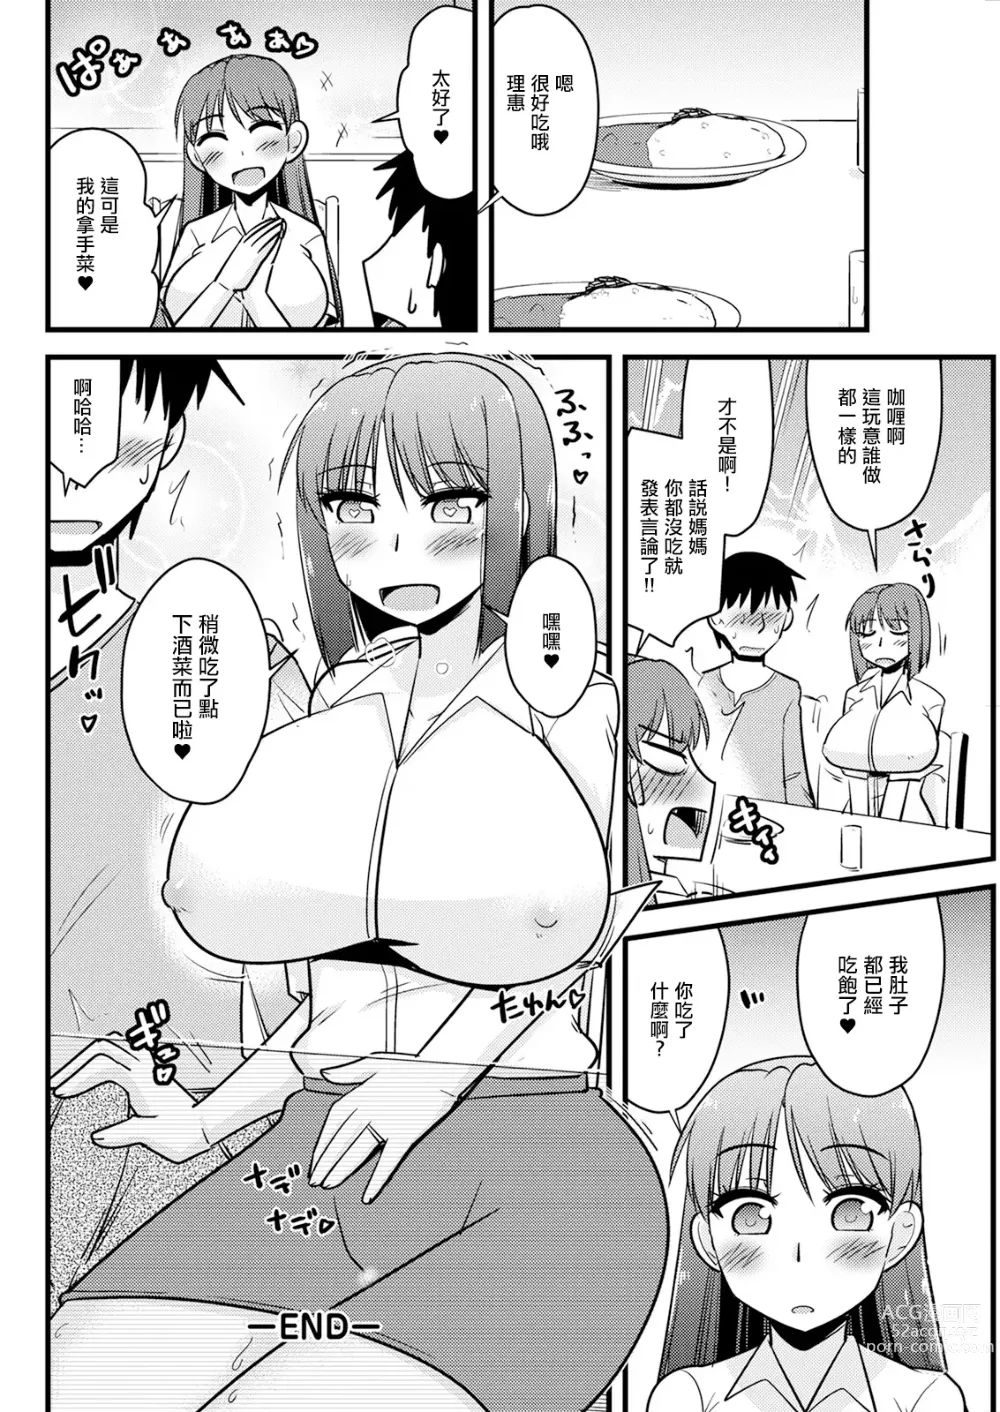 Page 18 of manga Kanojo no Haha no Kousai Test